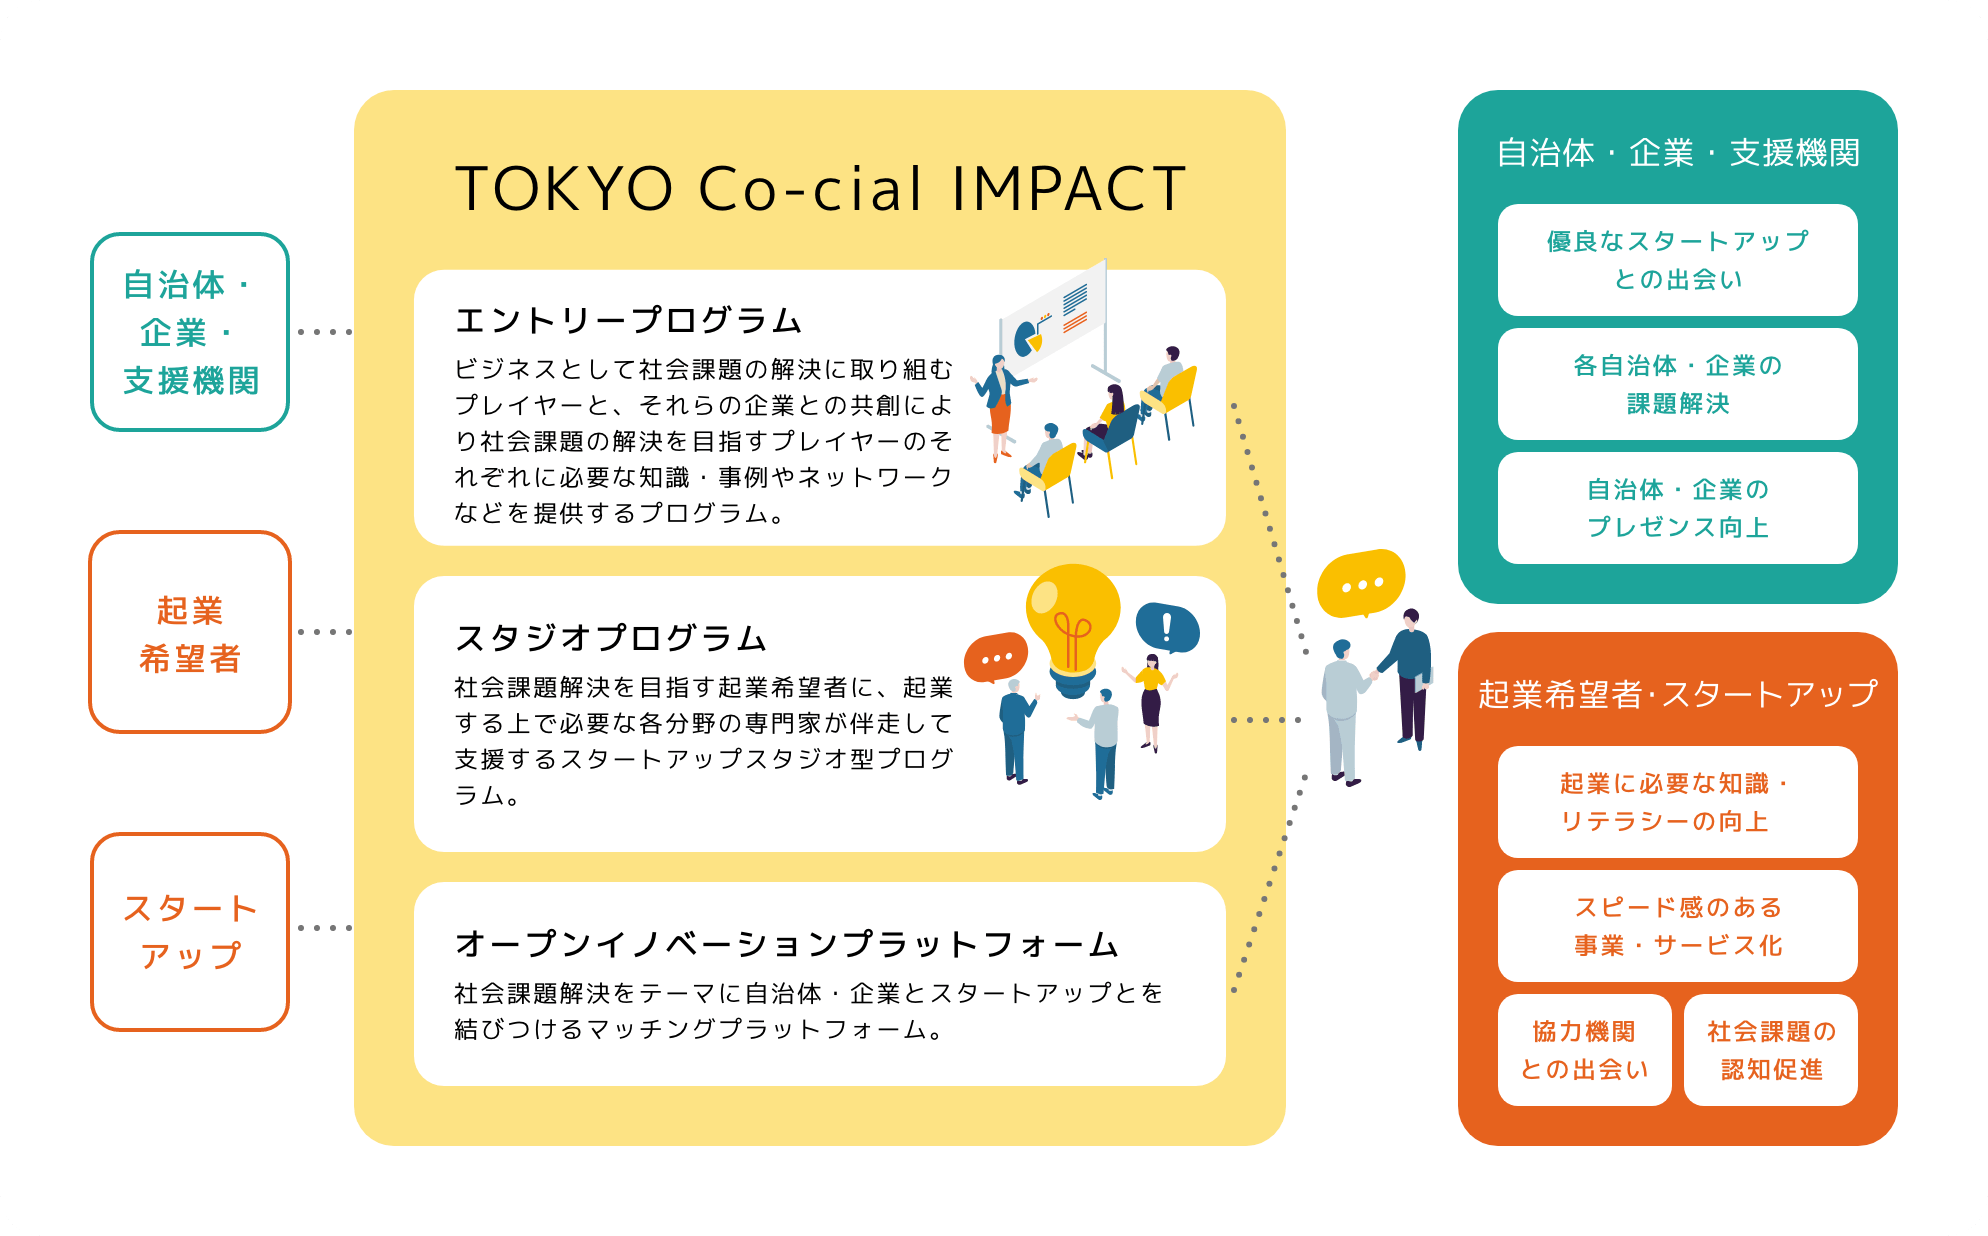 TOKYO Co-cial IMPACT エントリープログラム ビジネスとして社会課題の解決に取り組むプレイヤーと、それらの企業との共創により社会課題の解決を目指すプレイヤーのそれぞれに必要な知識・事例やネットワークなどを提供するプログラム。 スタジオプログラム 社会課題解決を目指す起業希望者に、起業する上で必要な各分野の専門家が伴走して支援するスタートアップスタジオ型プログラム。 オープンイノベーションプラットフォーム 社会課題解決をテーマに自治体・企業とスタートアップとを結びつけるマッチングプラットフォーム。